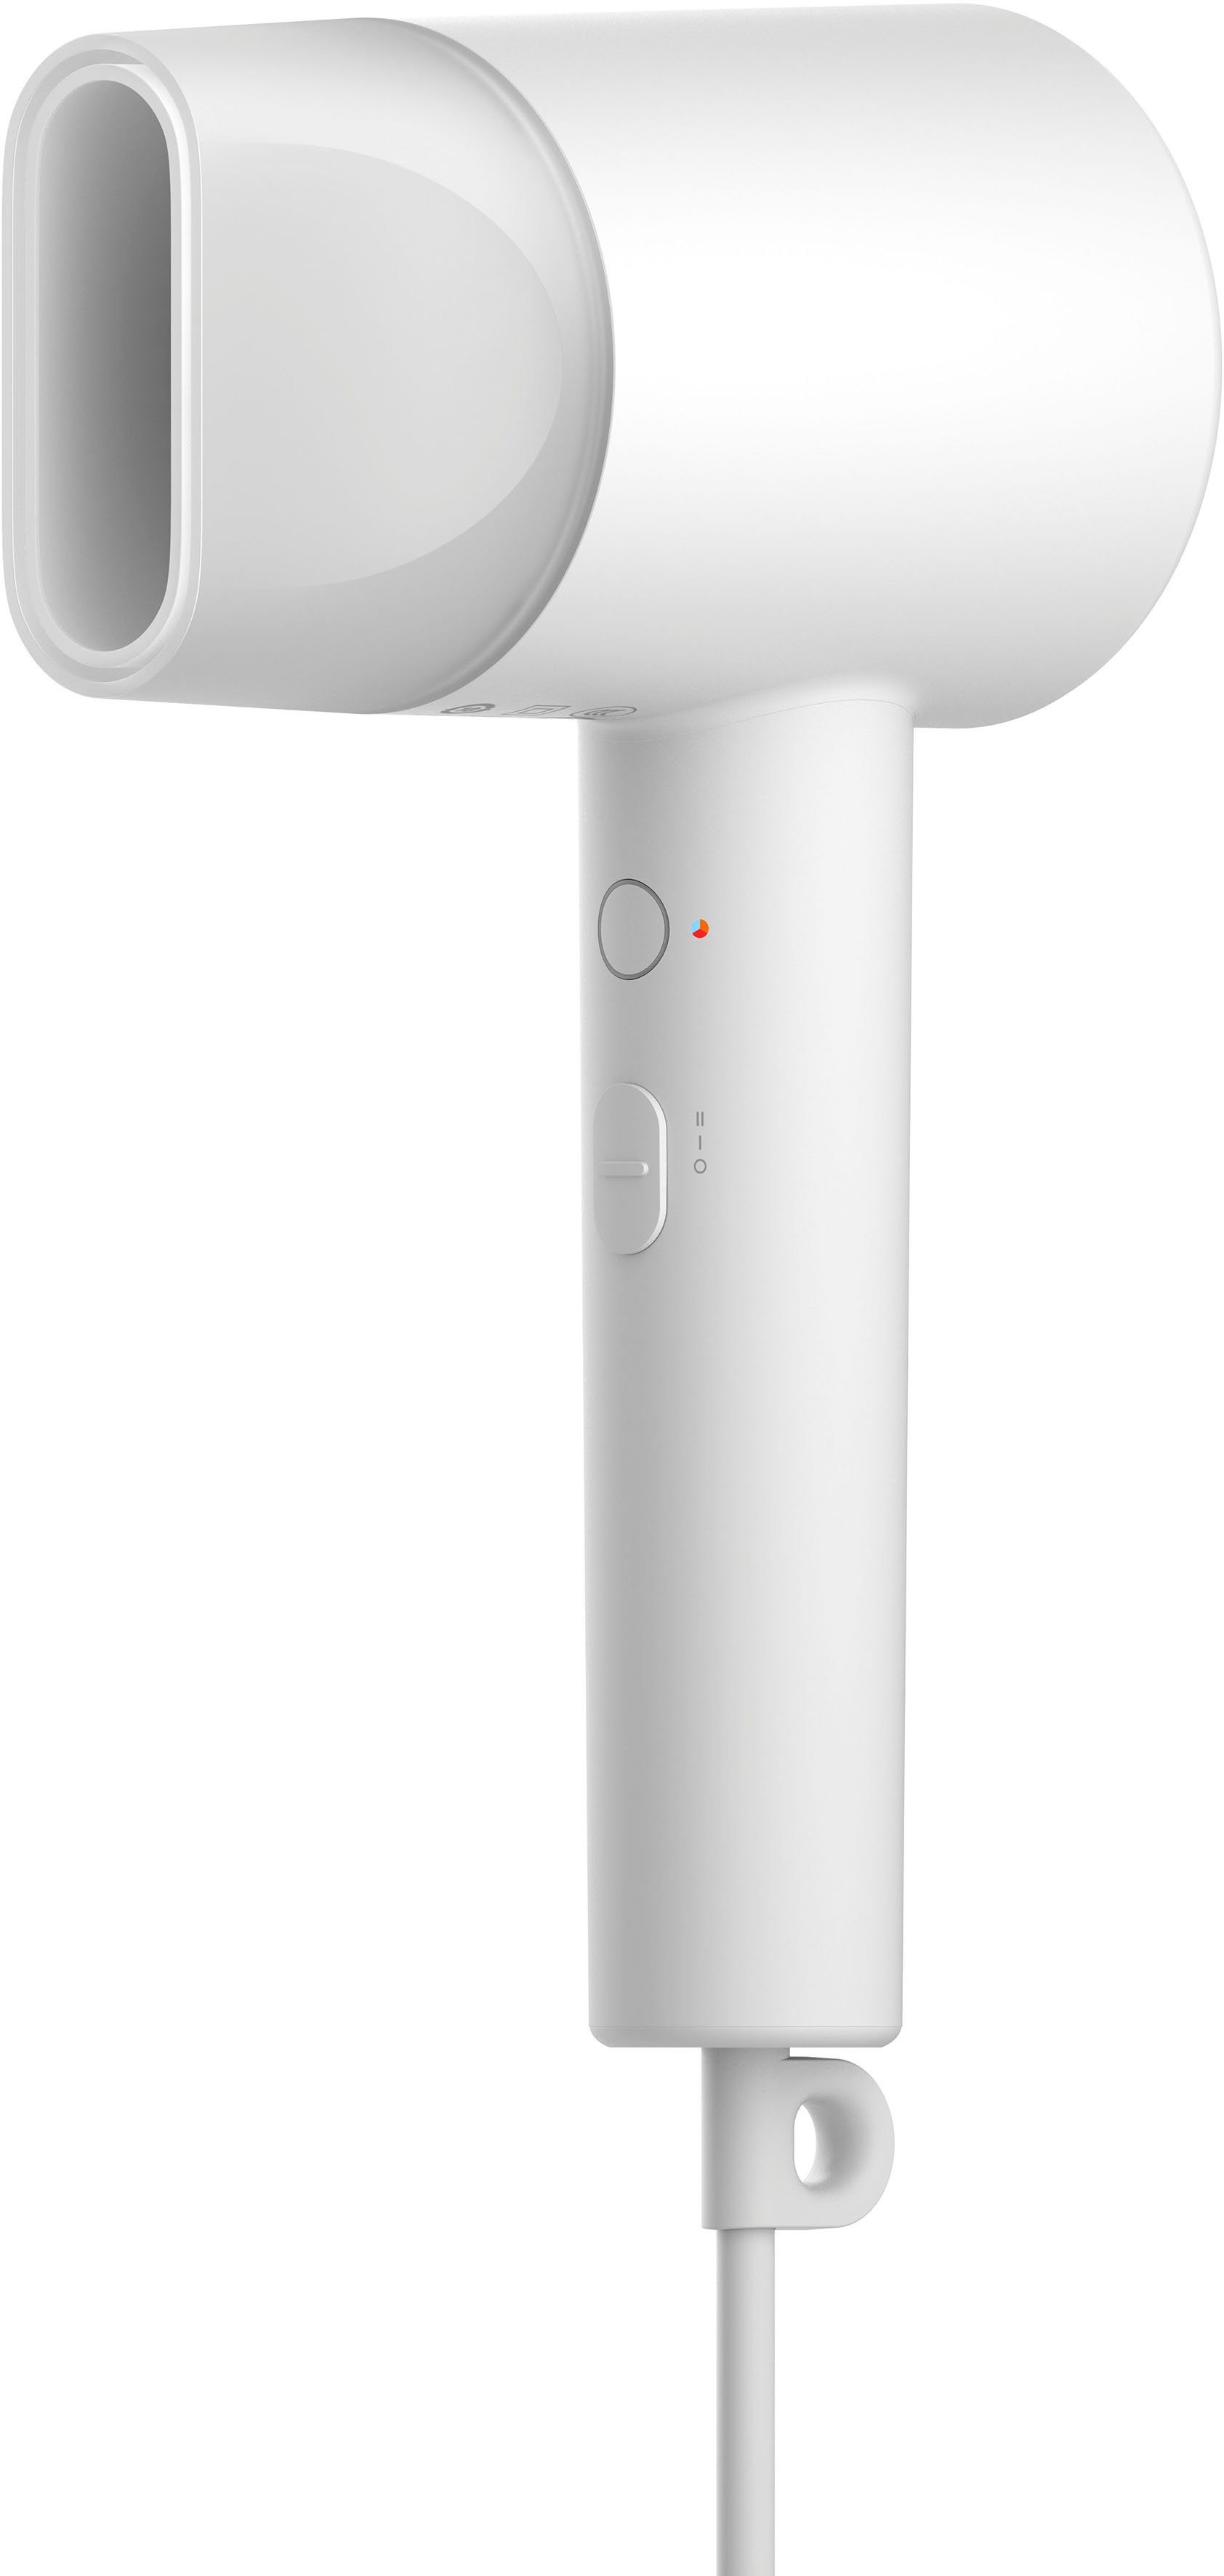 Xiaomi Ionic-Haartrockner Mi Ionic Hair Dryer H300, 1600 W, kompakt, ideal  fü Reisen Warm- und Kaltluftzirkulation online kaufen | OTTO